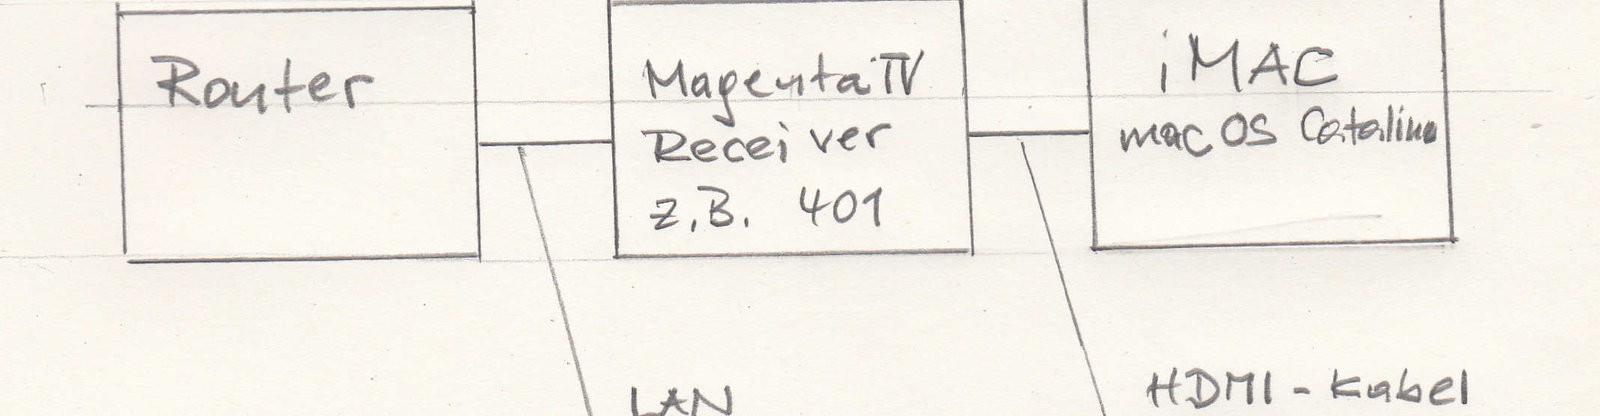 magenta tv_20191201_0001.jpg